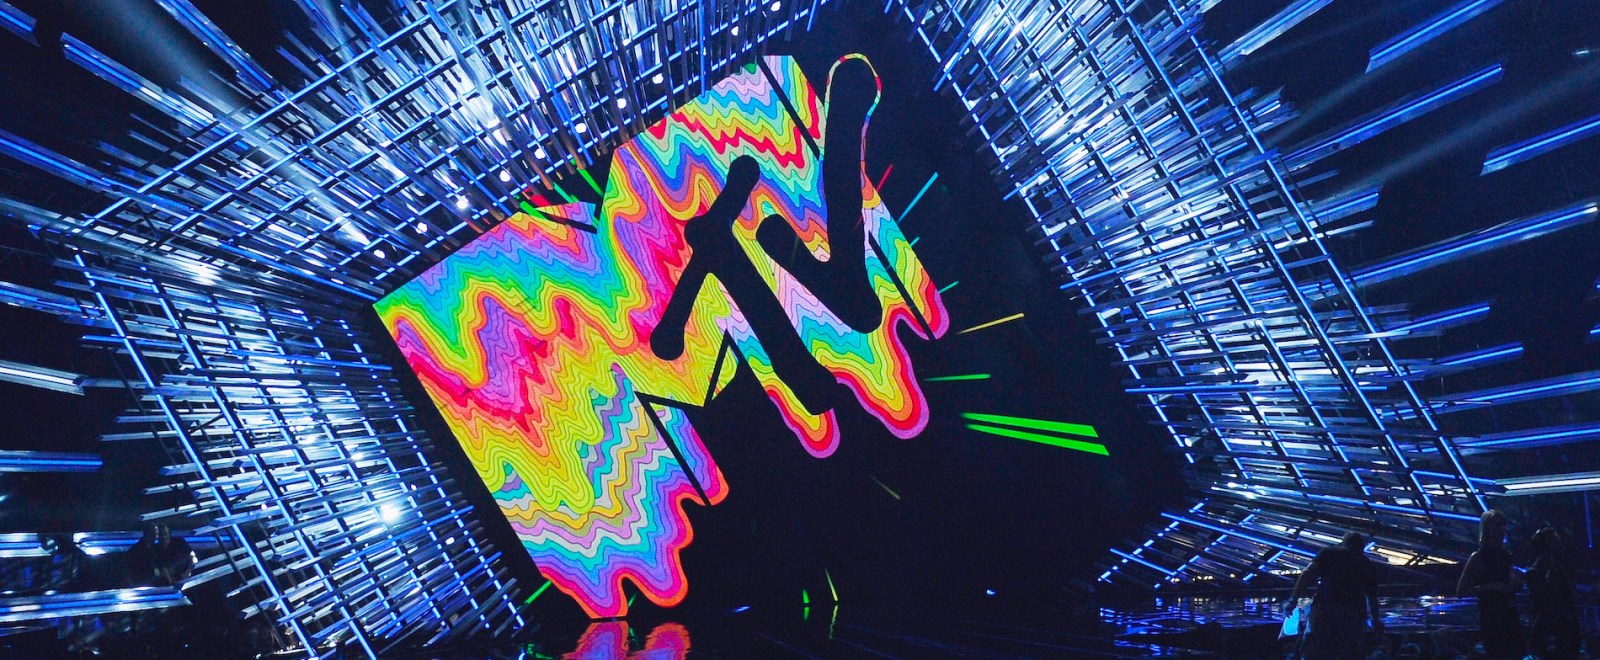 2015 MTV Video Music Awards VMAs logo getty